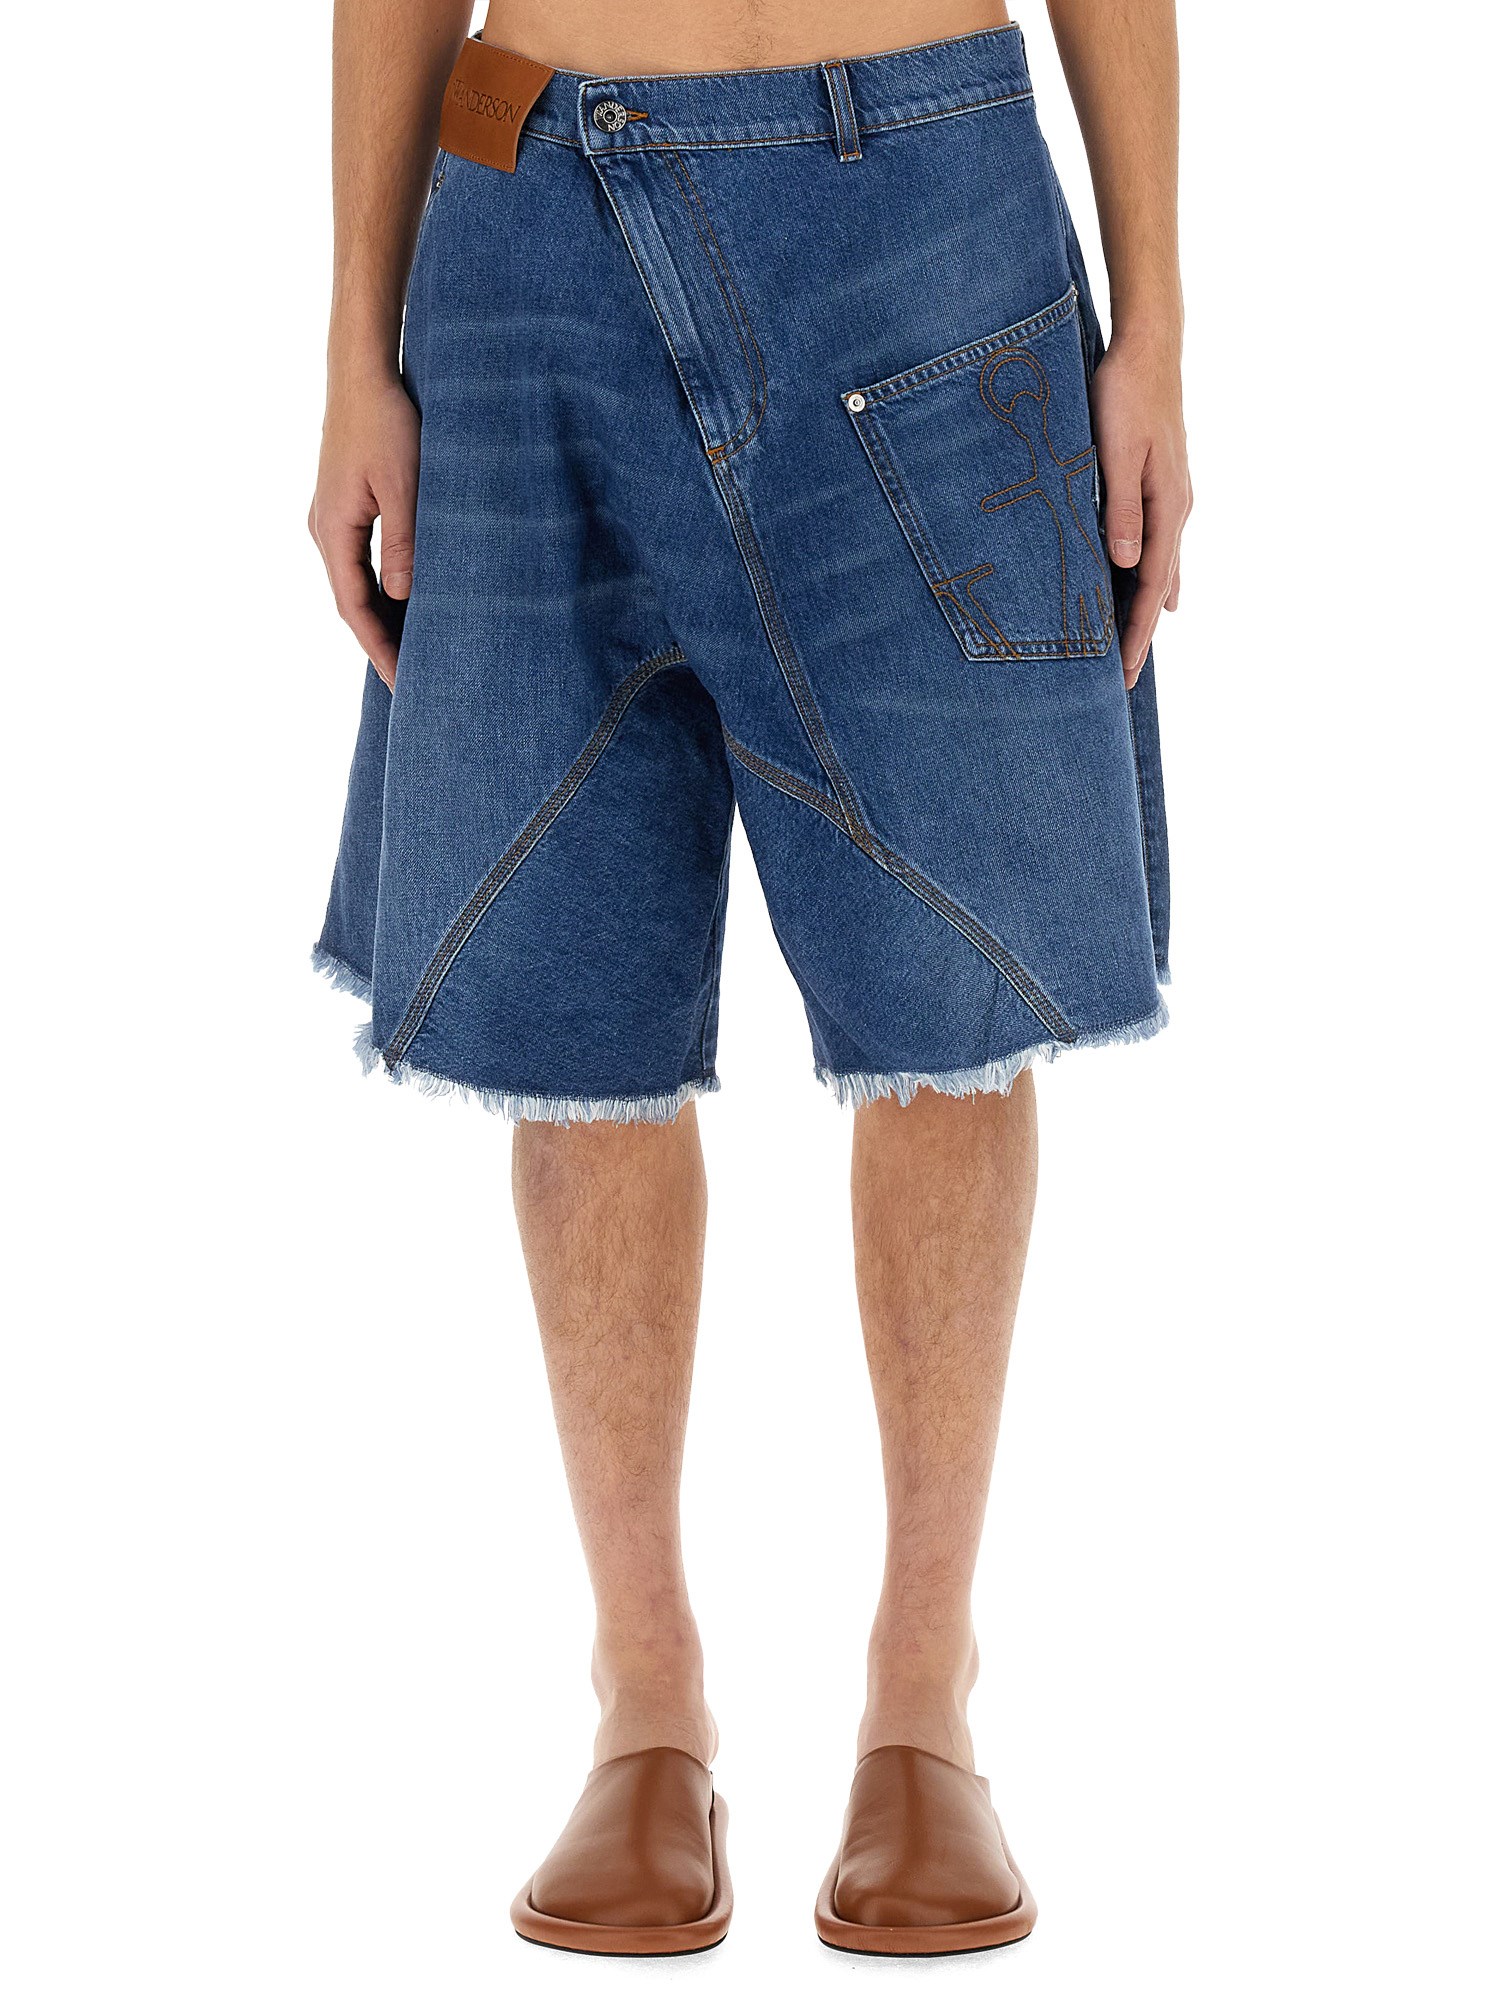 jw anderson twisted workwear bermuda shorts